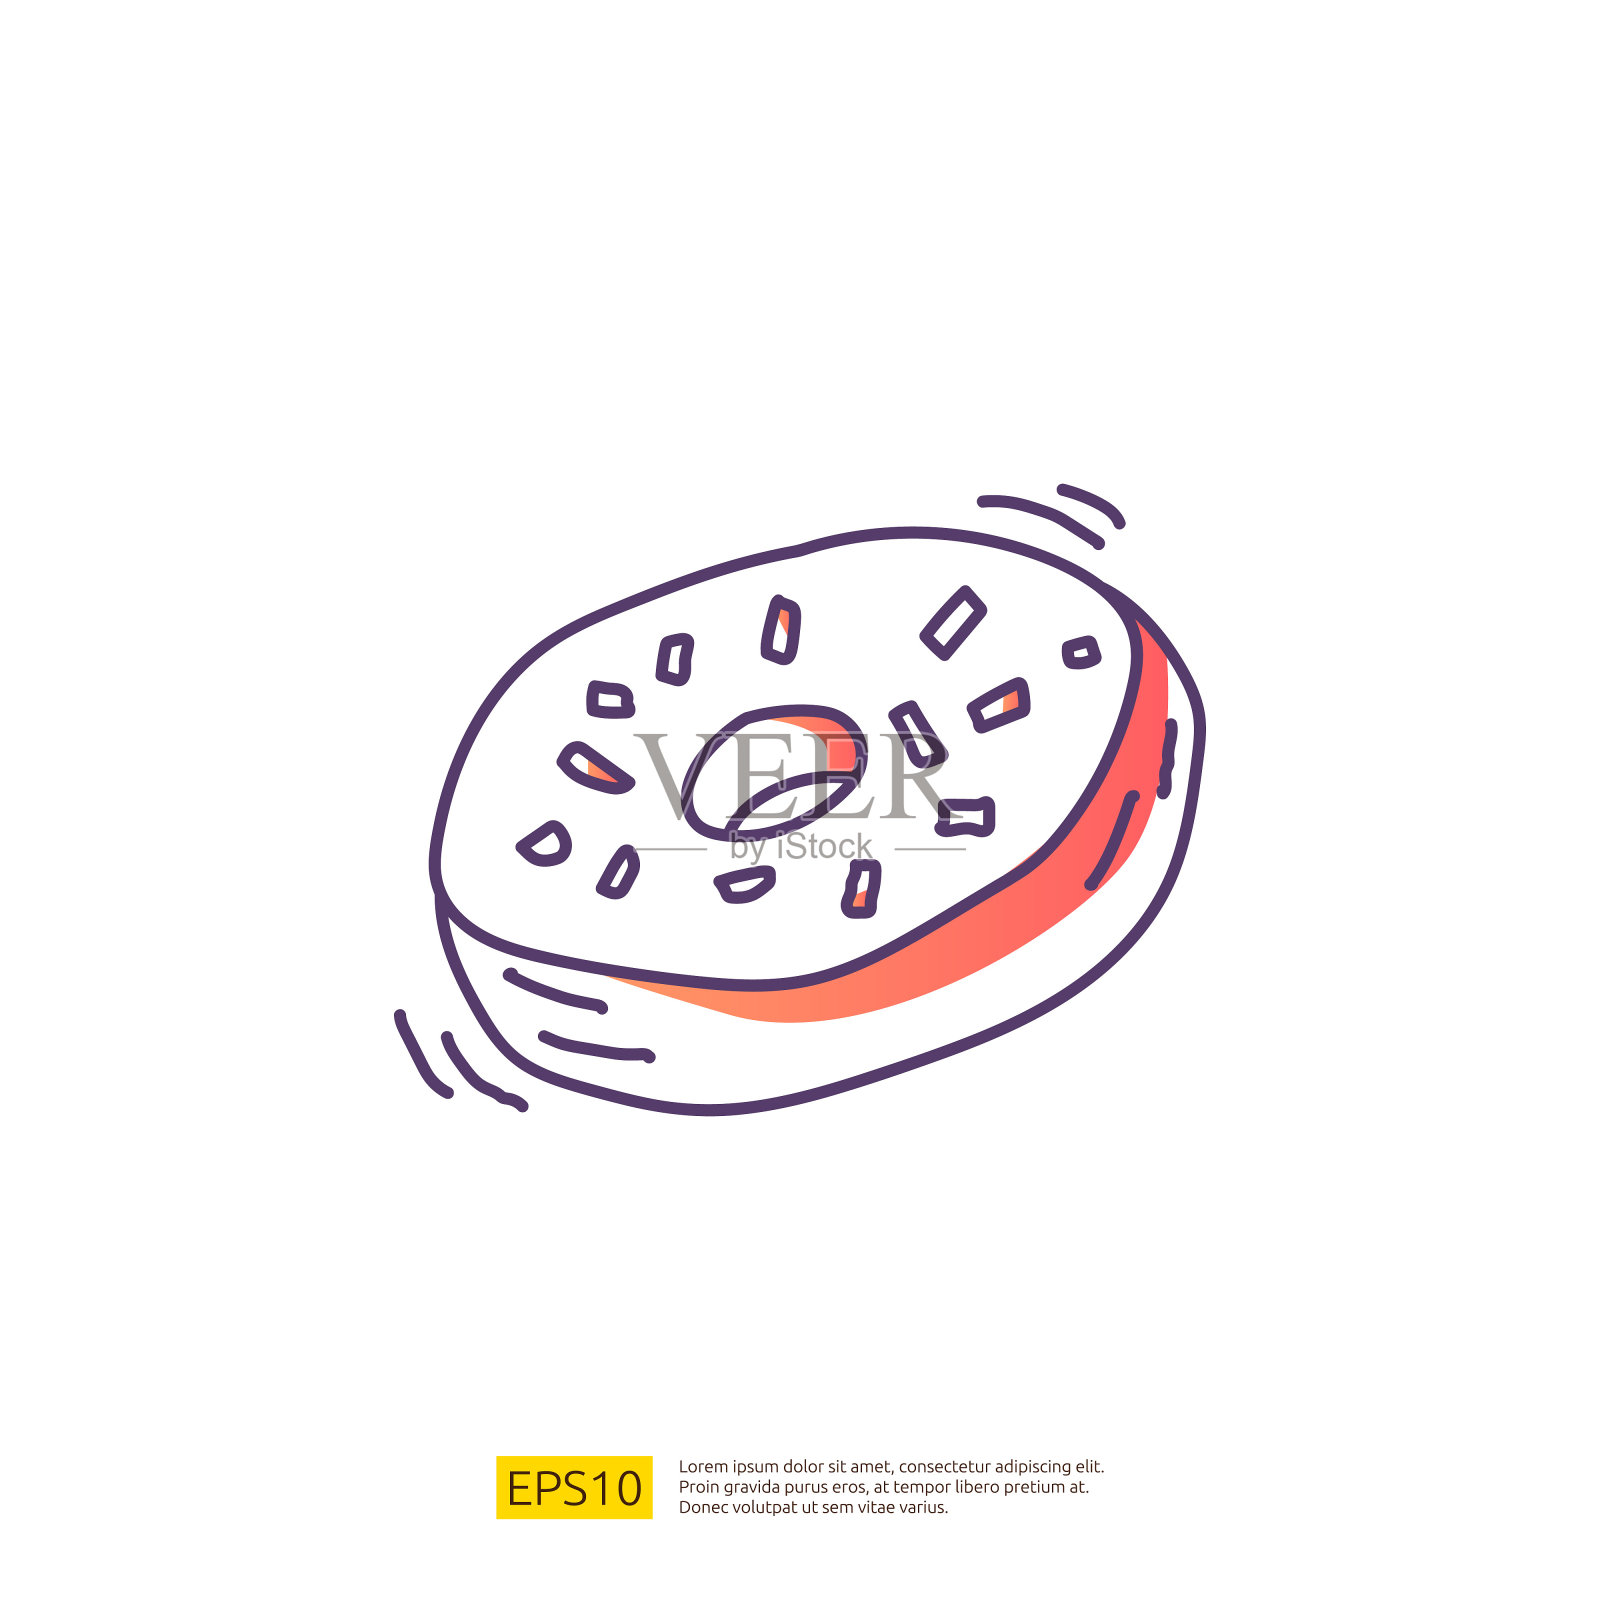 面包圈或面包圈蛋糕的咖啡馆概念矢量插图。手绘涂鸦渐变填充线条图标符号符号符号插画图片素材